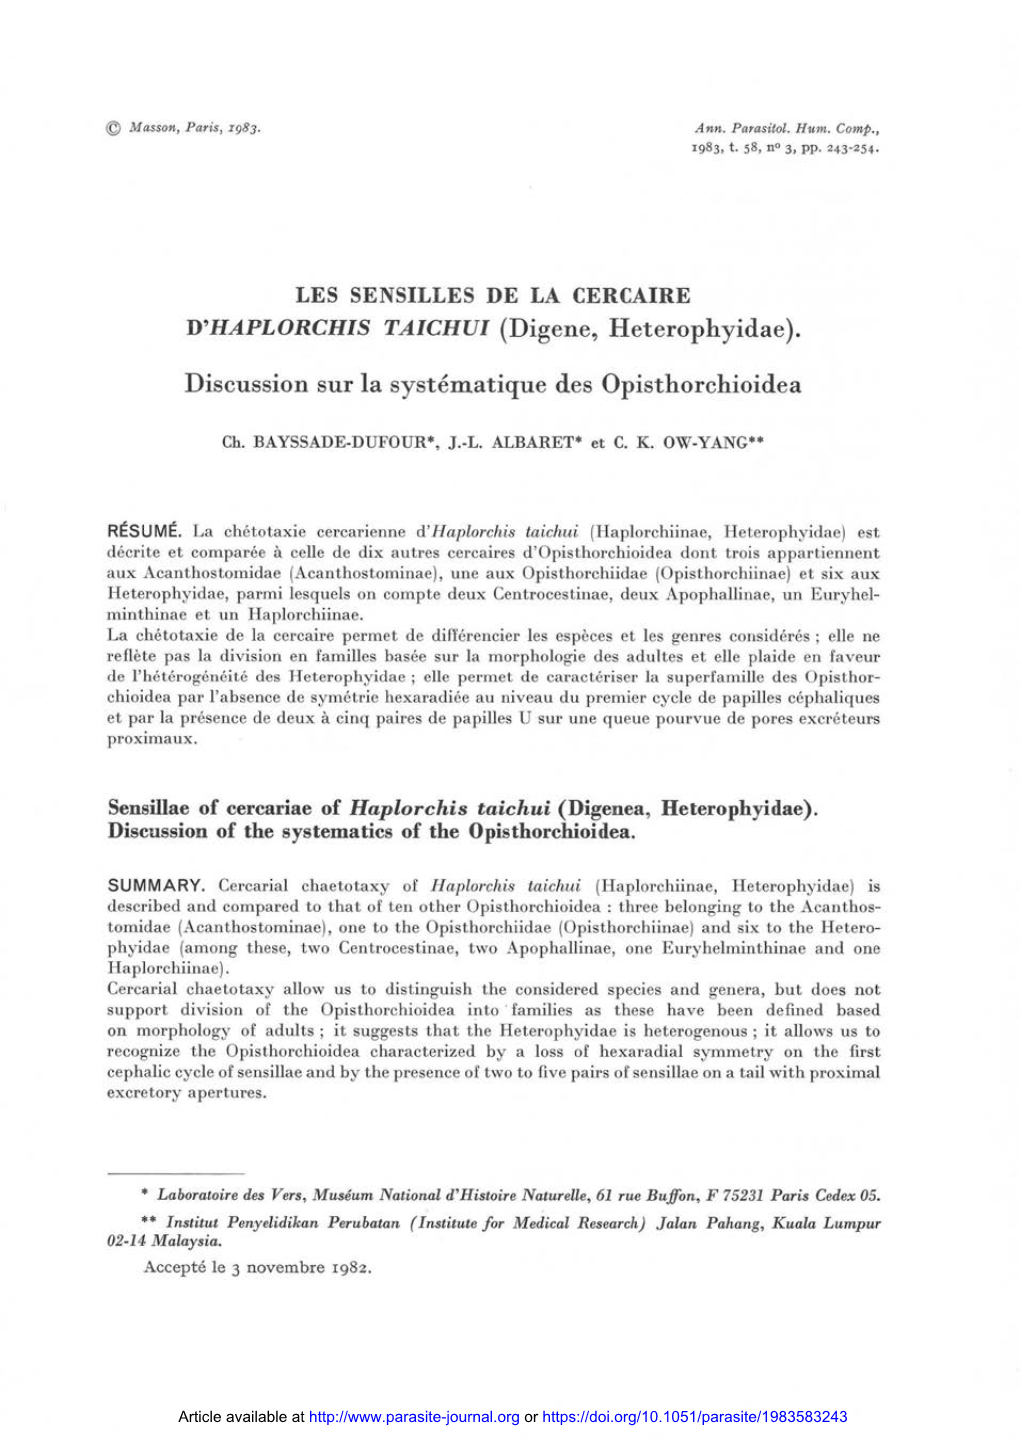 LES SENSILLES DE LA CERCAIRE D'haplorchis TAICHUI (Digene, Heterophyidae)